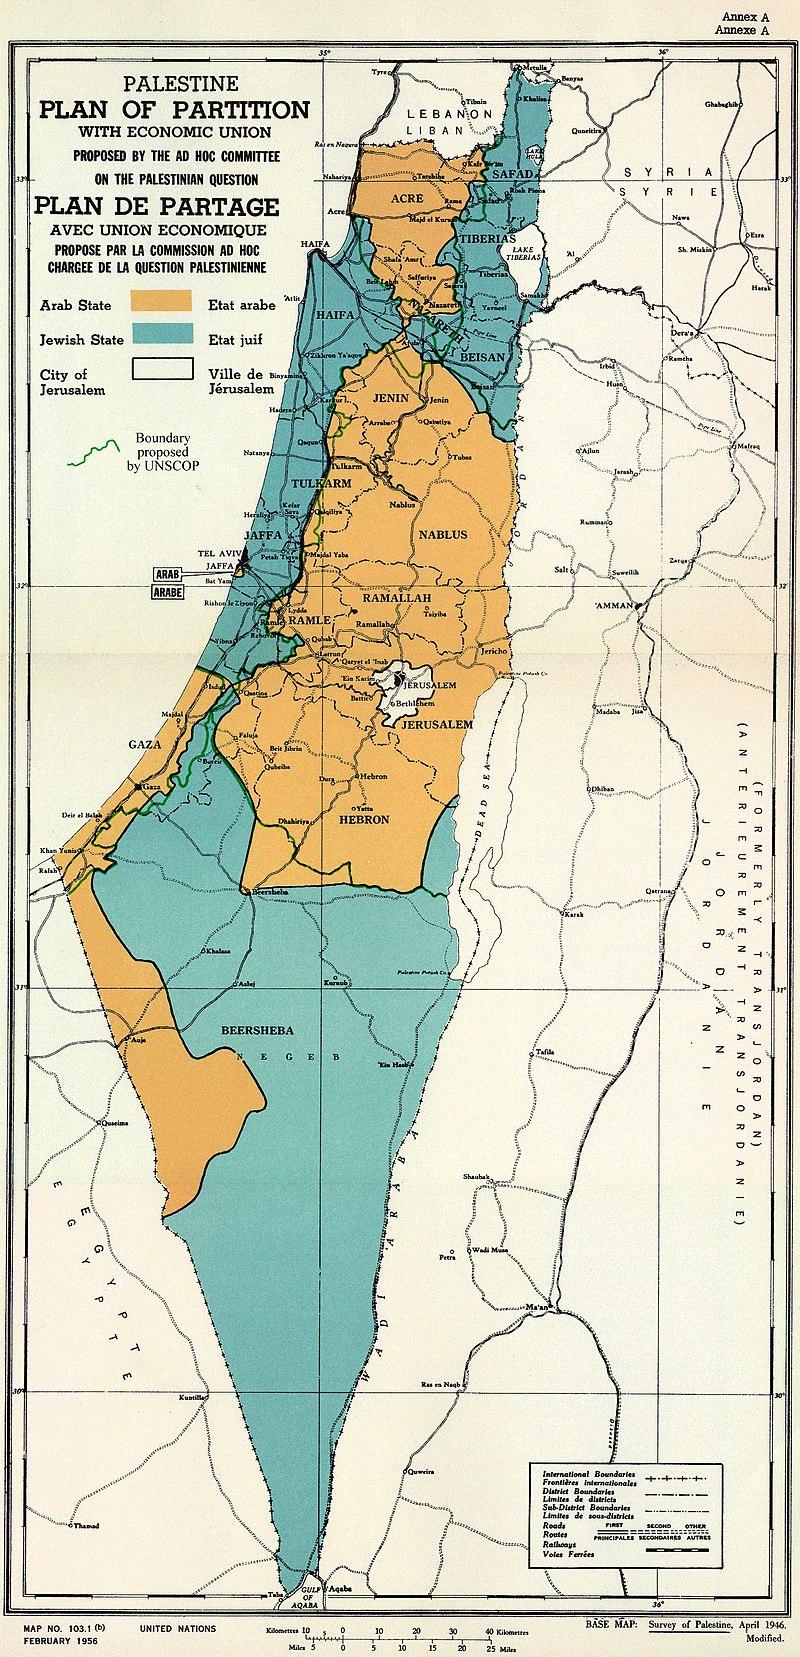 خريطة رسمية بعد قرار الأمم المتحدة بتاريخ 29 نوفمبر 1947م بتقسيم فلسطين إلى دولة عربية ويهودية وتحويل القدس لمدينة دولية.